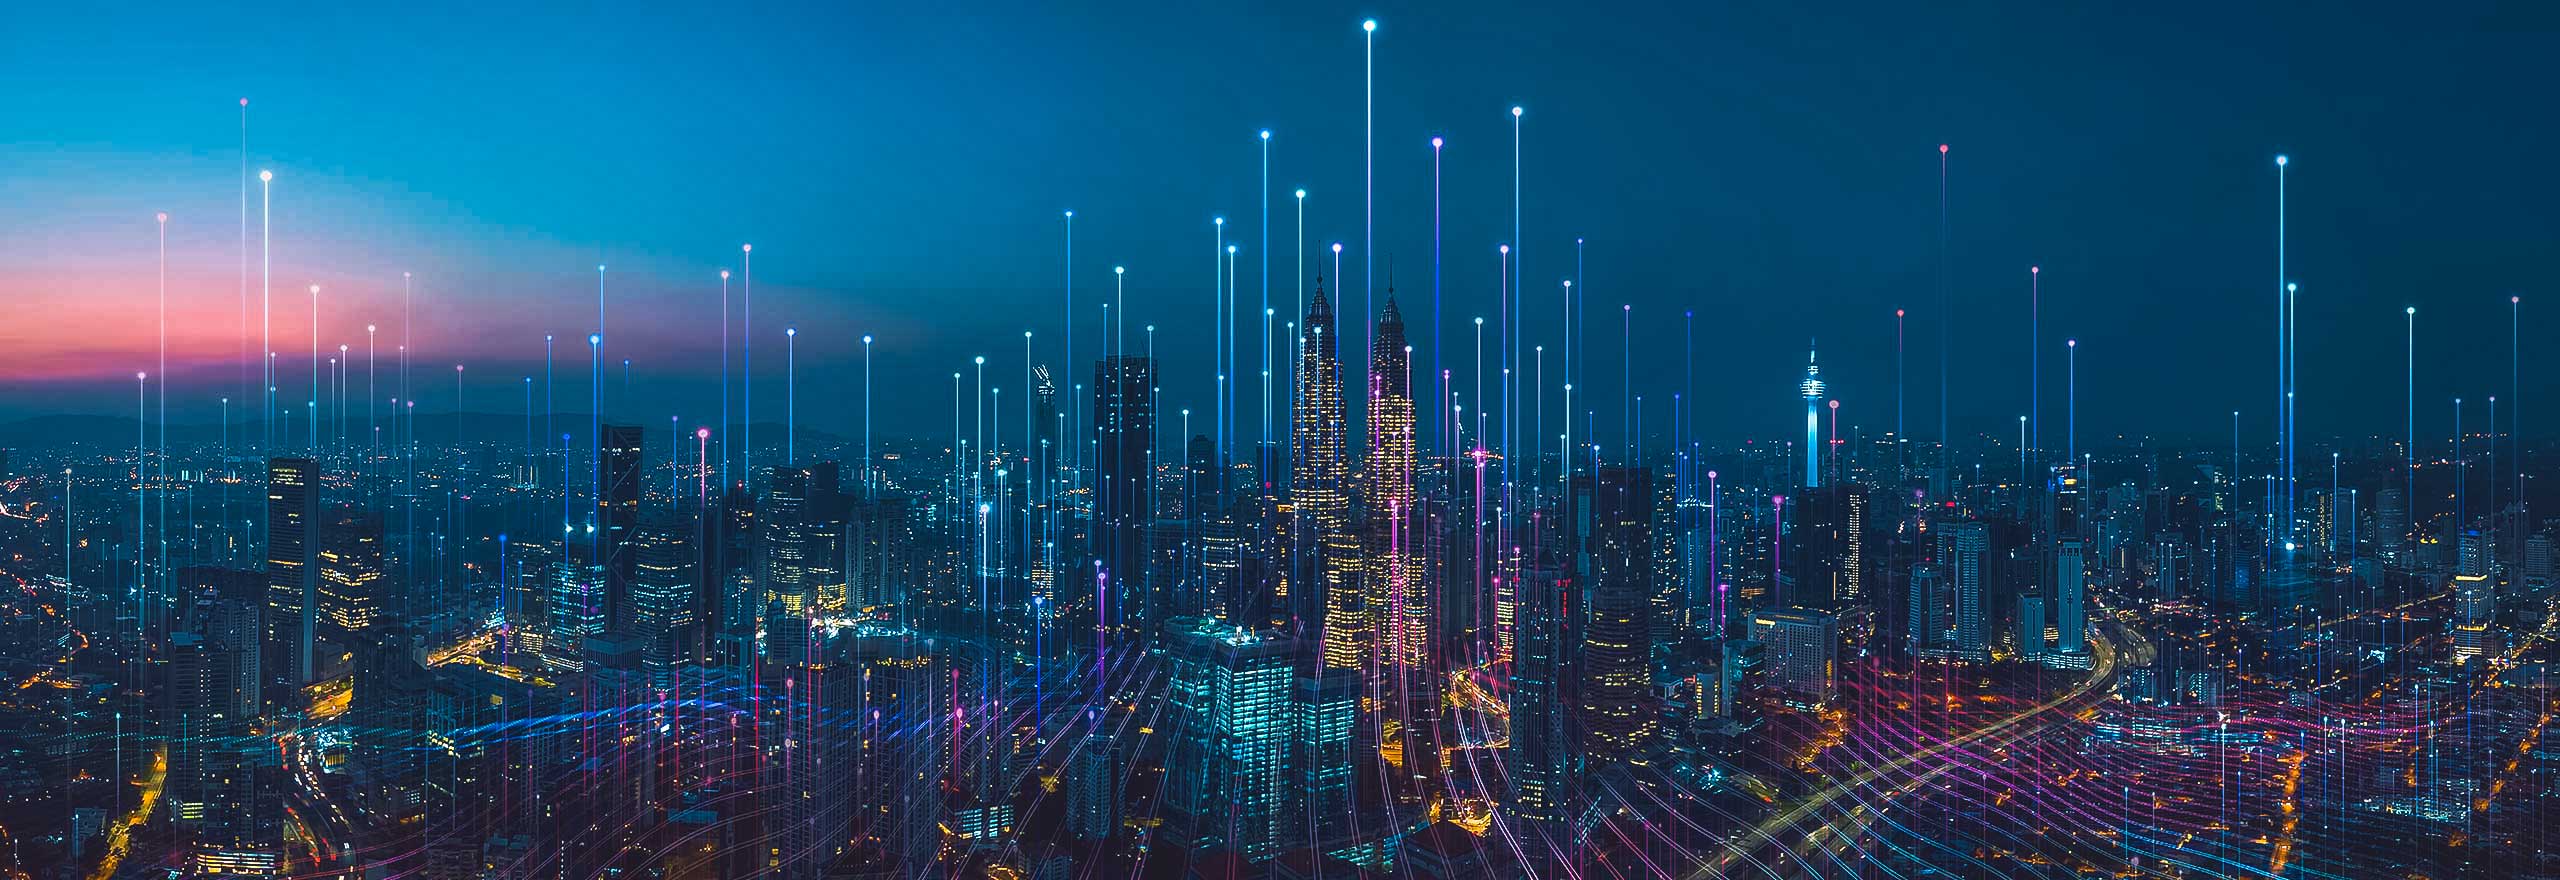 Un paisaje urbano nocturno con elementos digitales superpuestos que representan puntos de datos